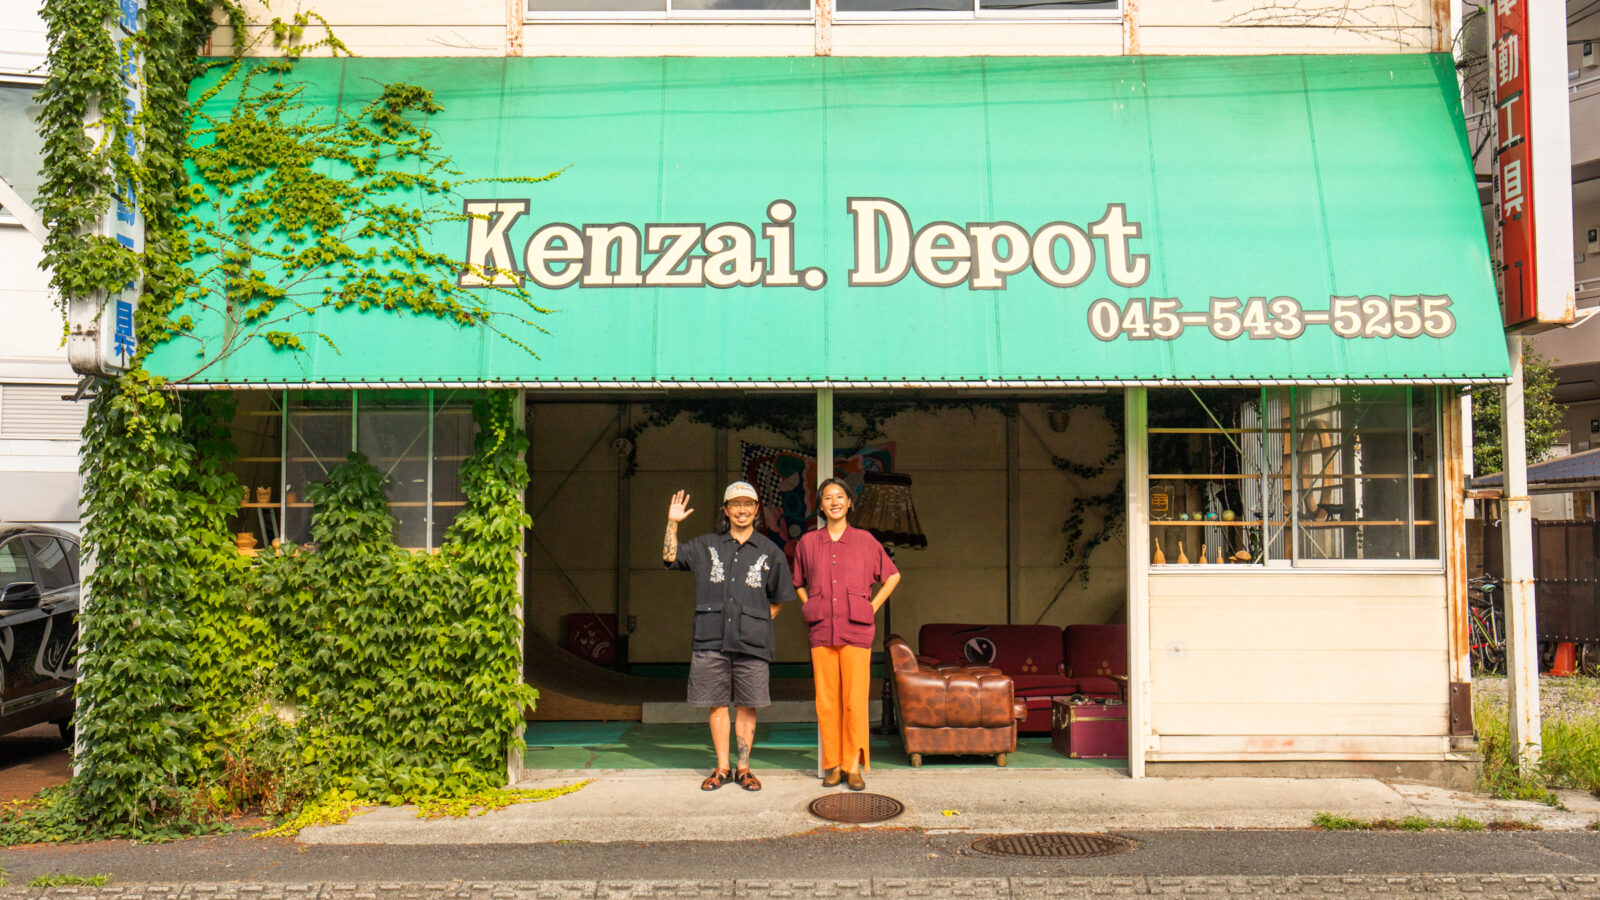 Kenzai. Depot